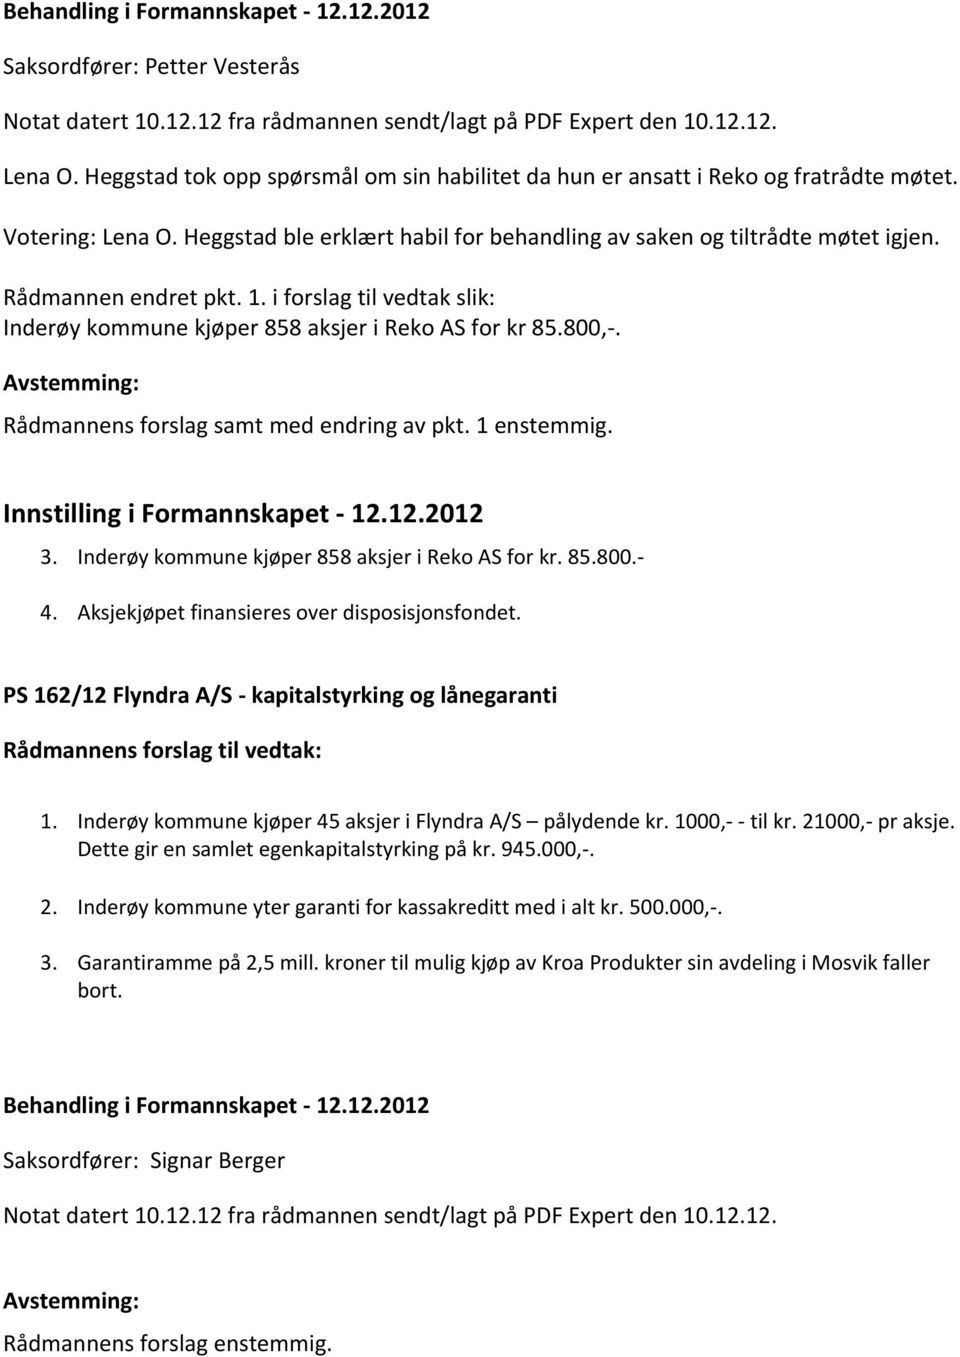 Rådmannen endret pkt. 1. i forslag til vedtak slik: Inderøy kommune kjøper 858 aksjer i Reko AS for kr 85.800,-. Rådmannens forslag samt med endring av pkt. 1 enstemmig.